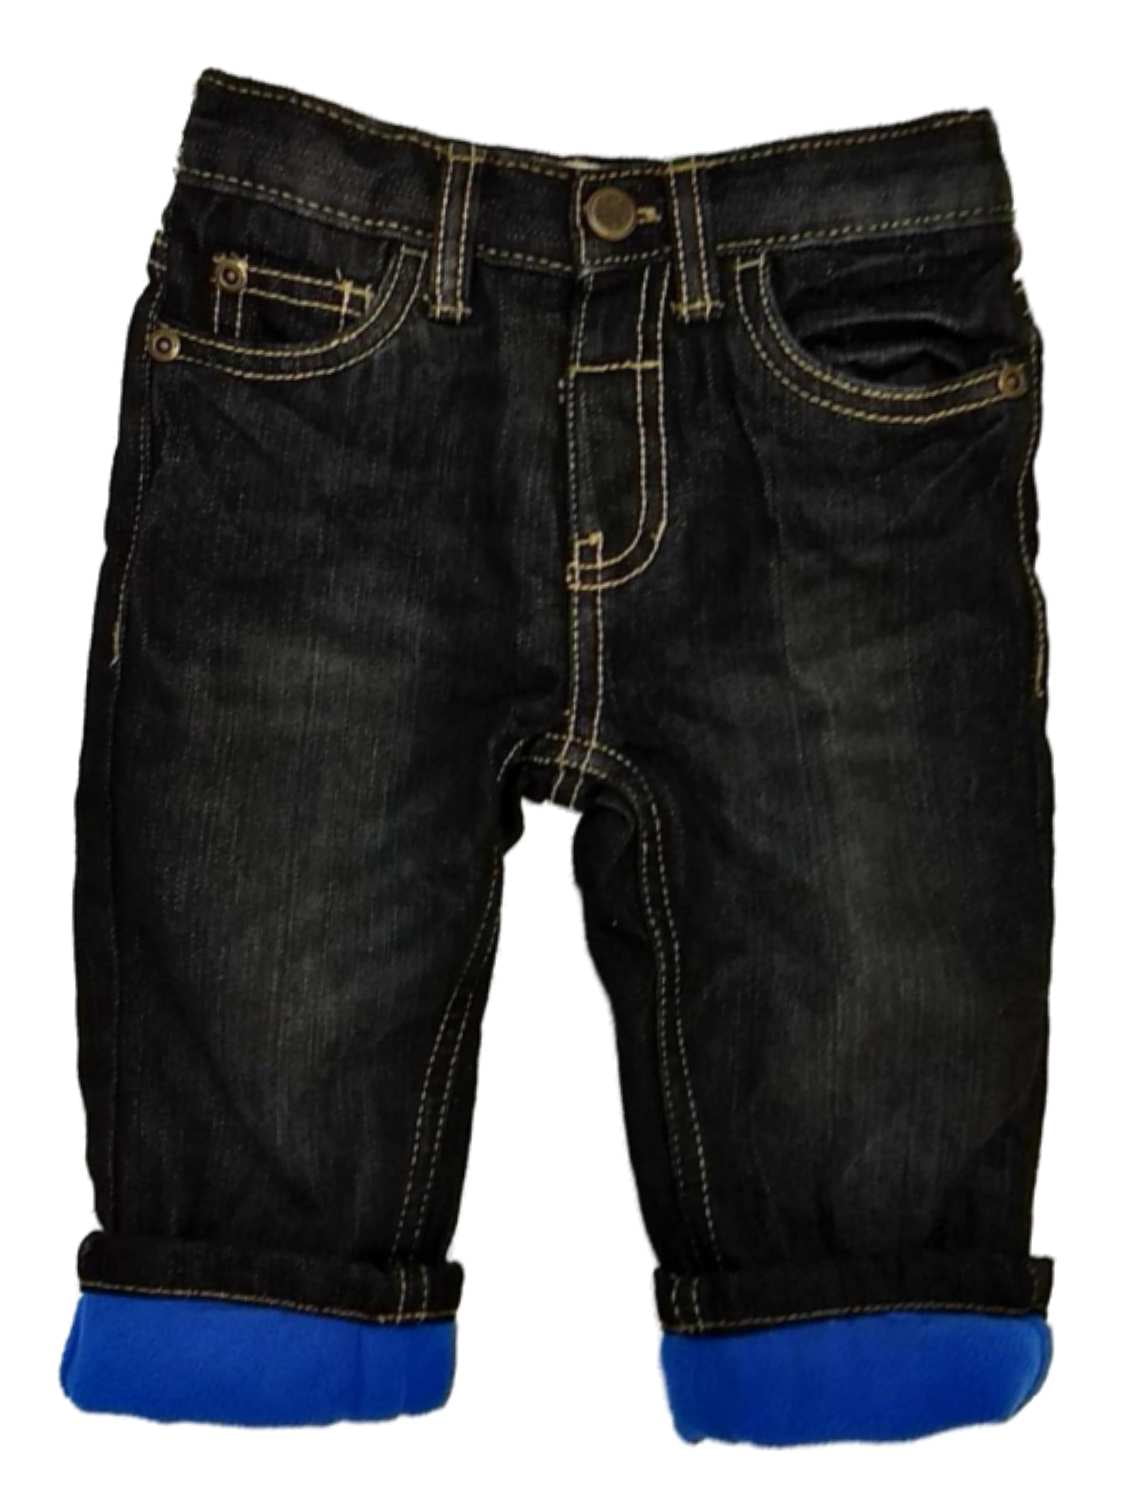 boys fleece lined jeans